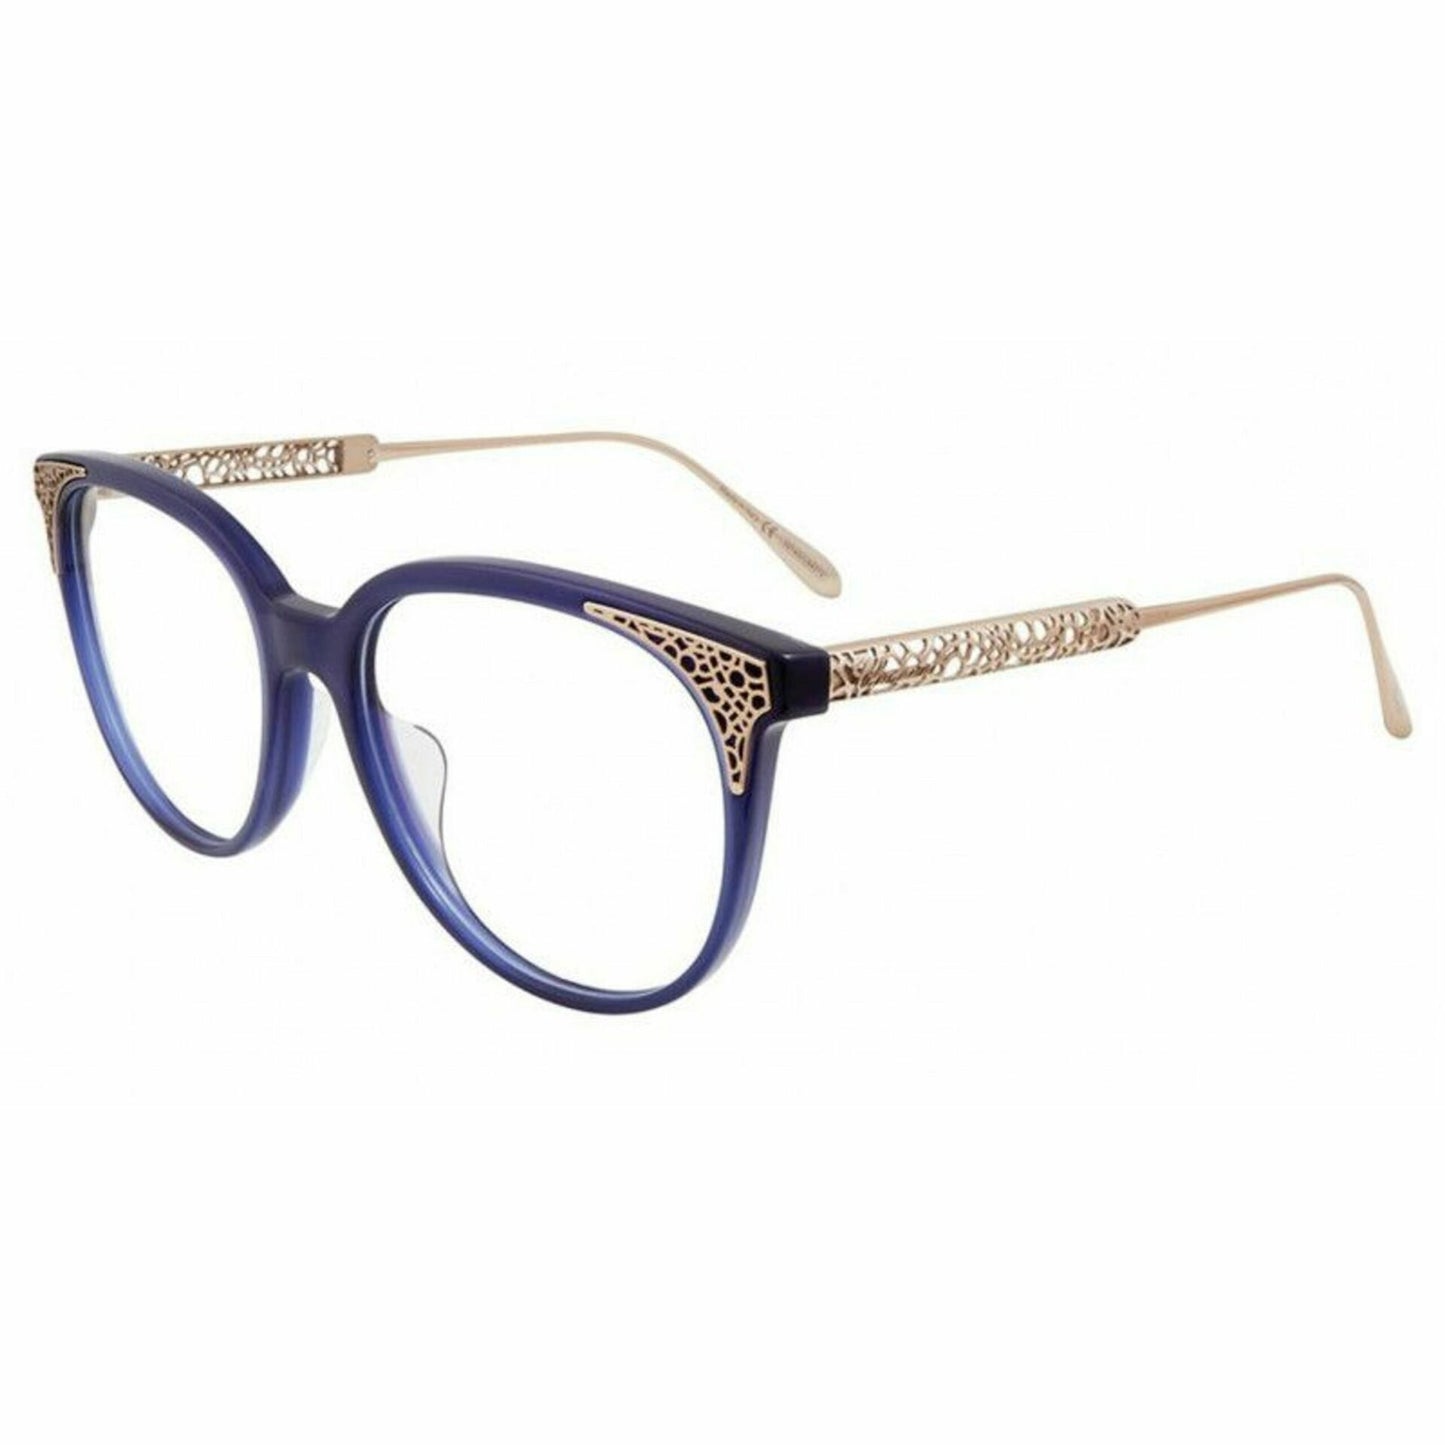 Chopard Eyewear Brille VCH253 0956 53